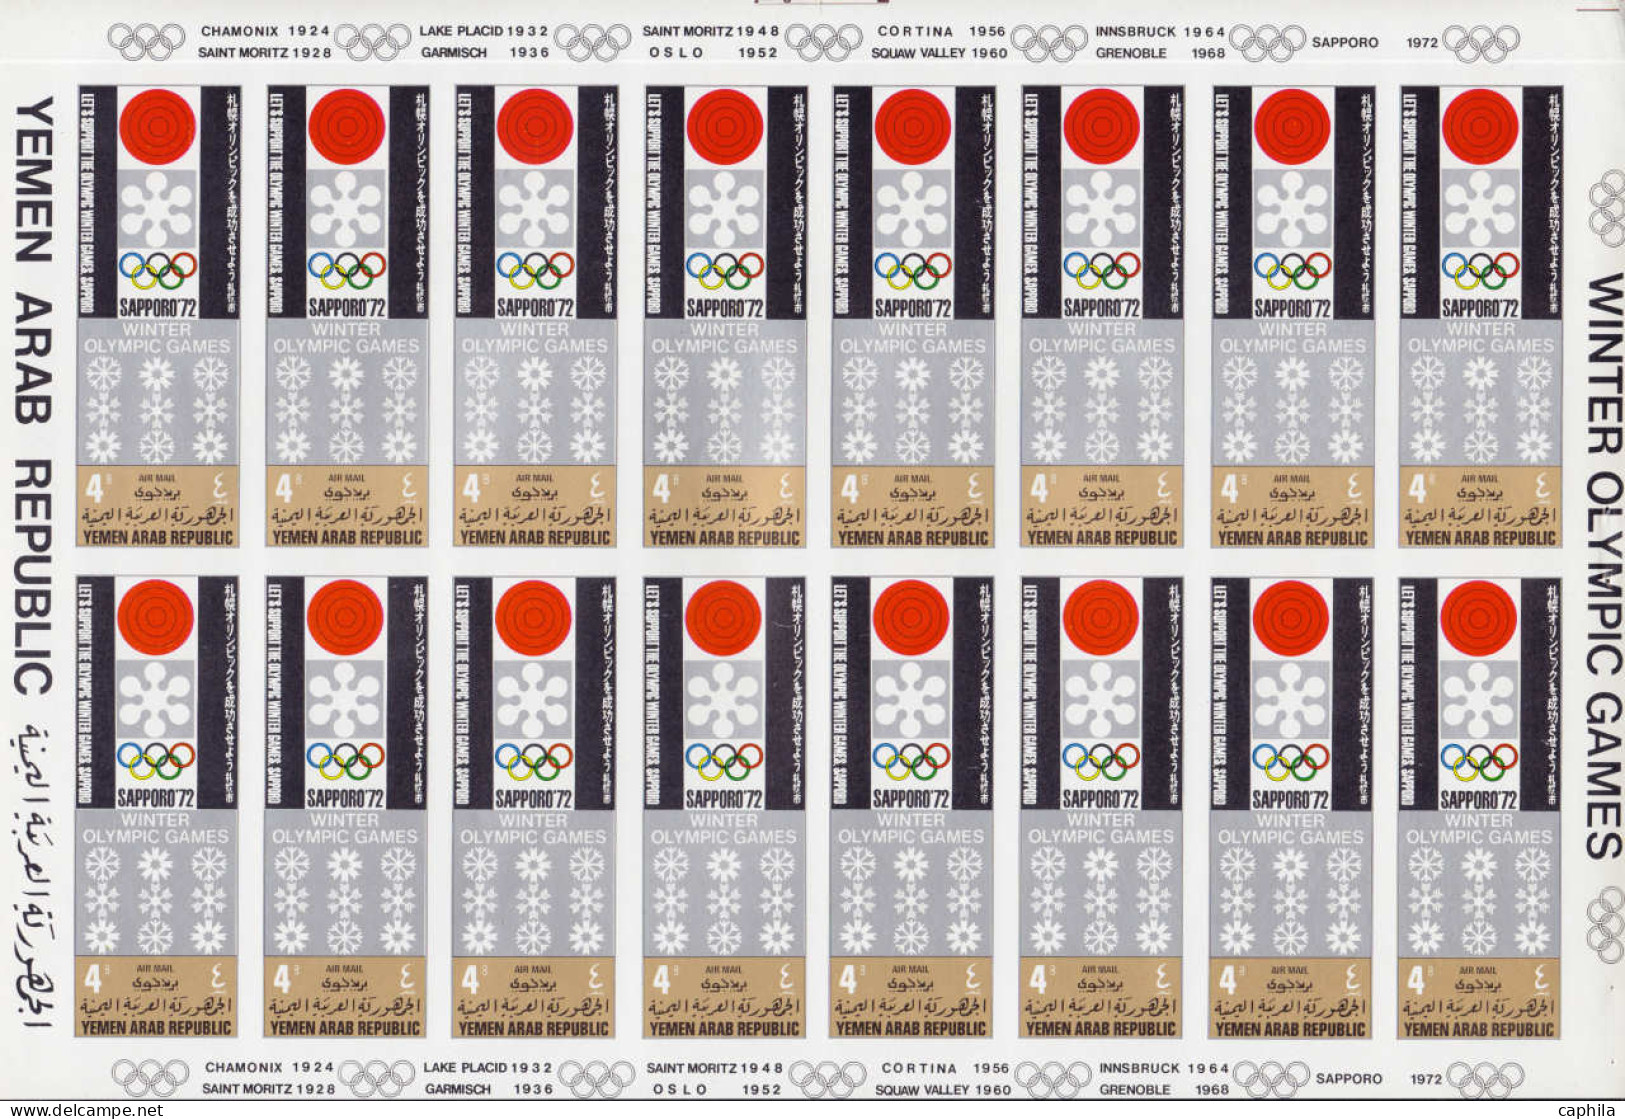 ESS YEMEN - Poste - Michel 818 + 819 + 823, série de 3 carnets contenant chacun 4 feuillets de 16 essais + feuillet de 1